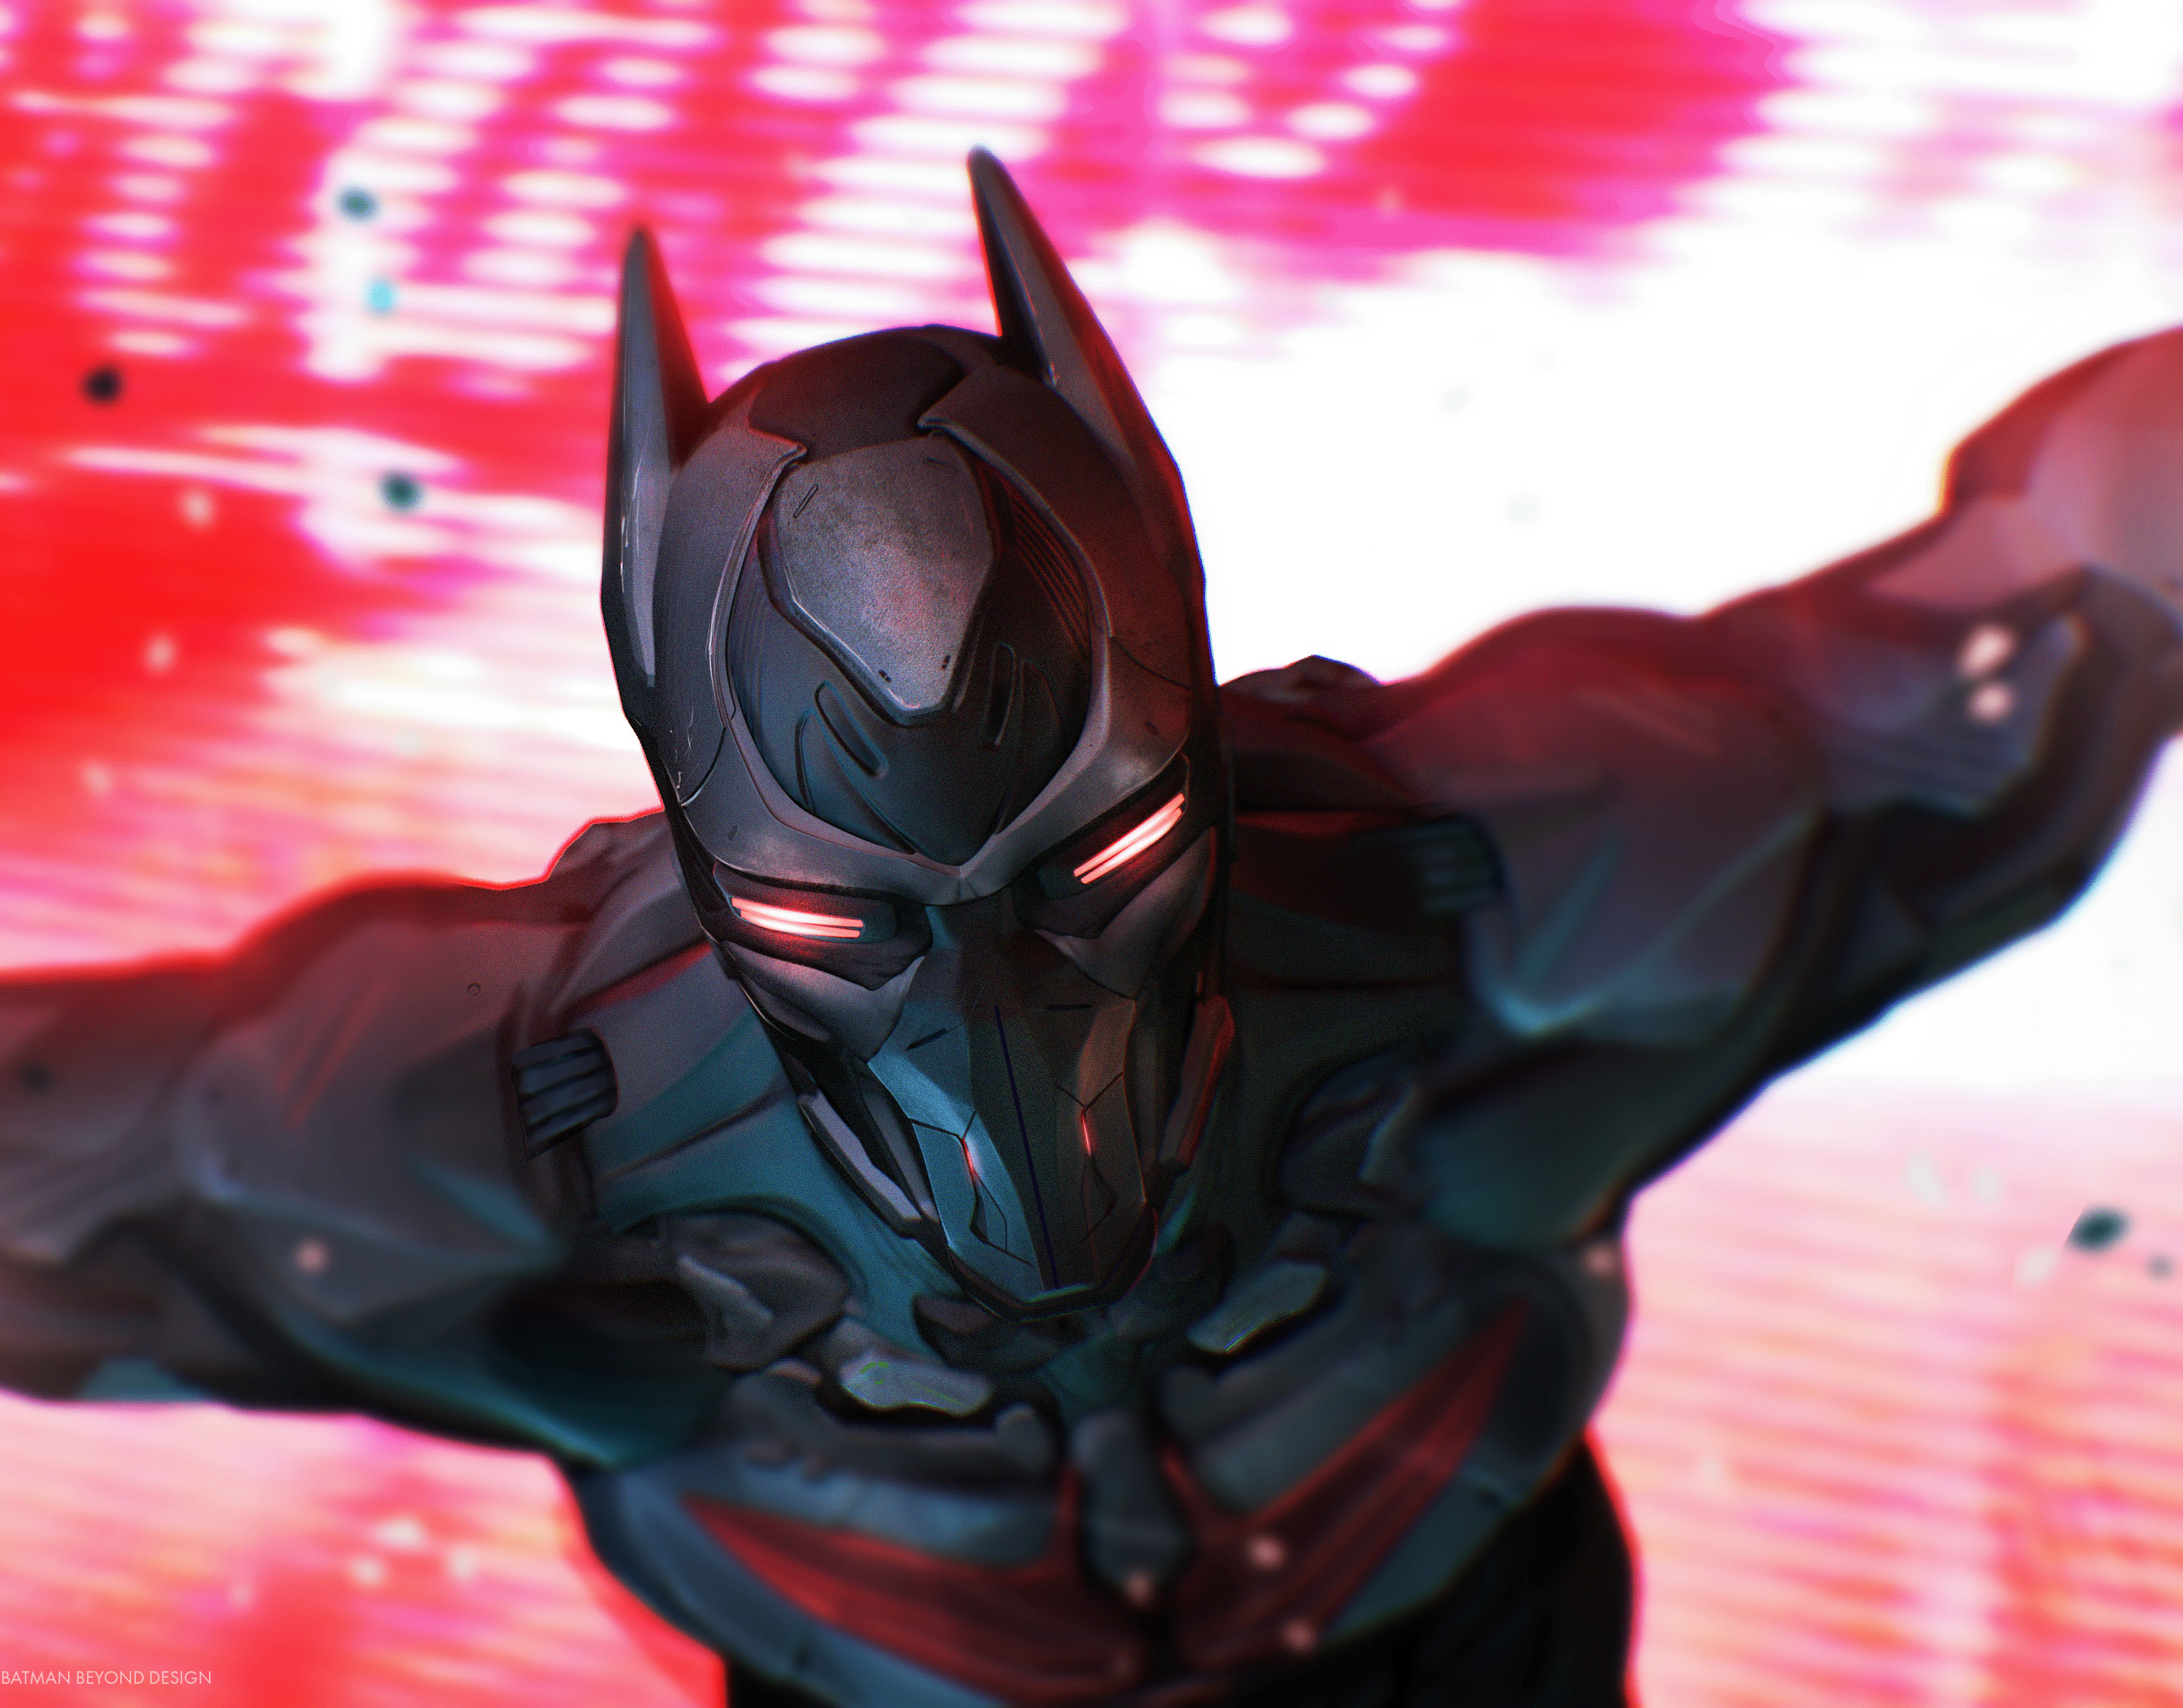 batman beyond concept suit